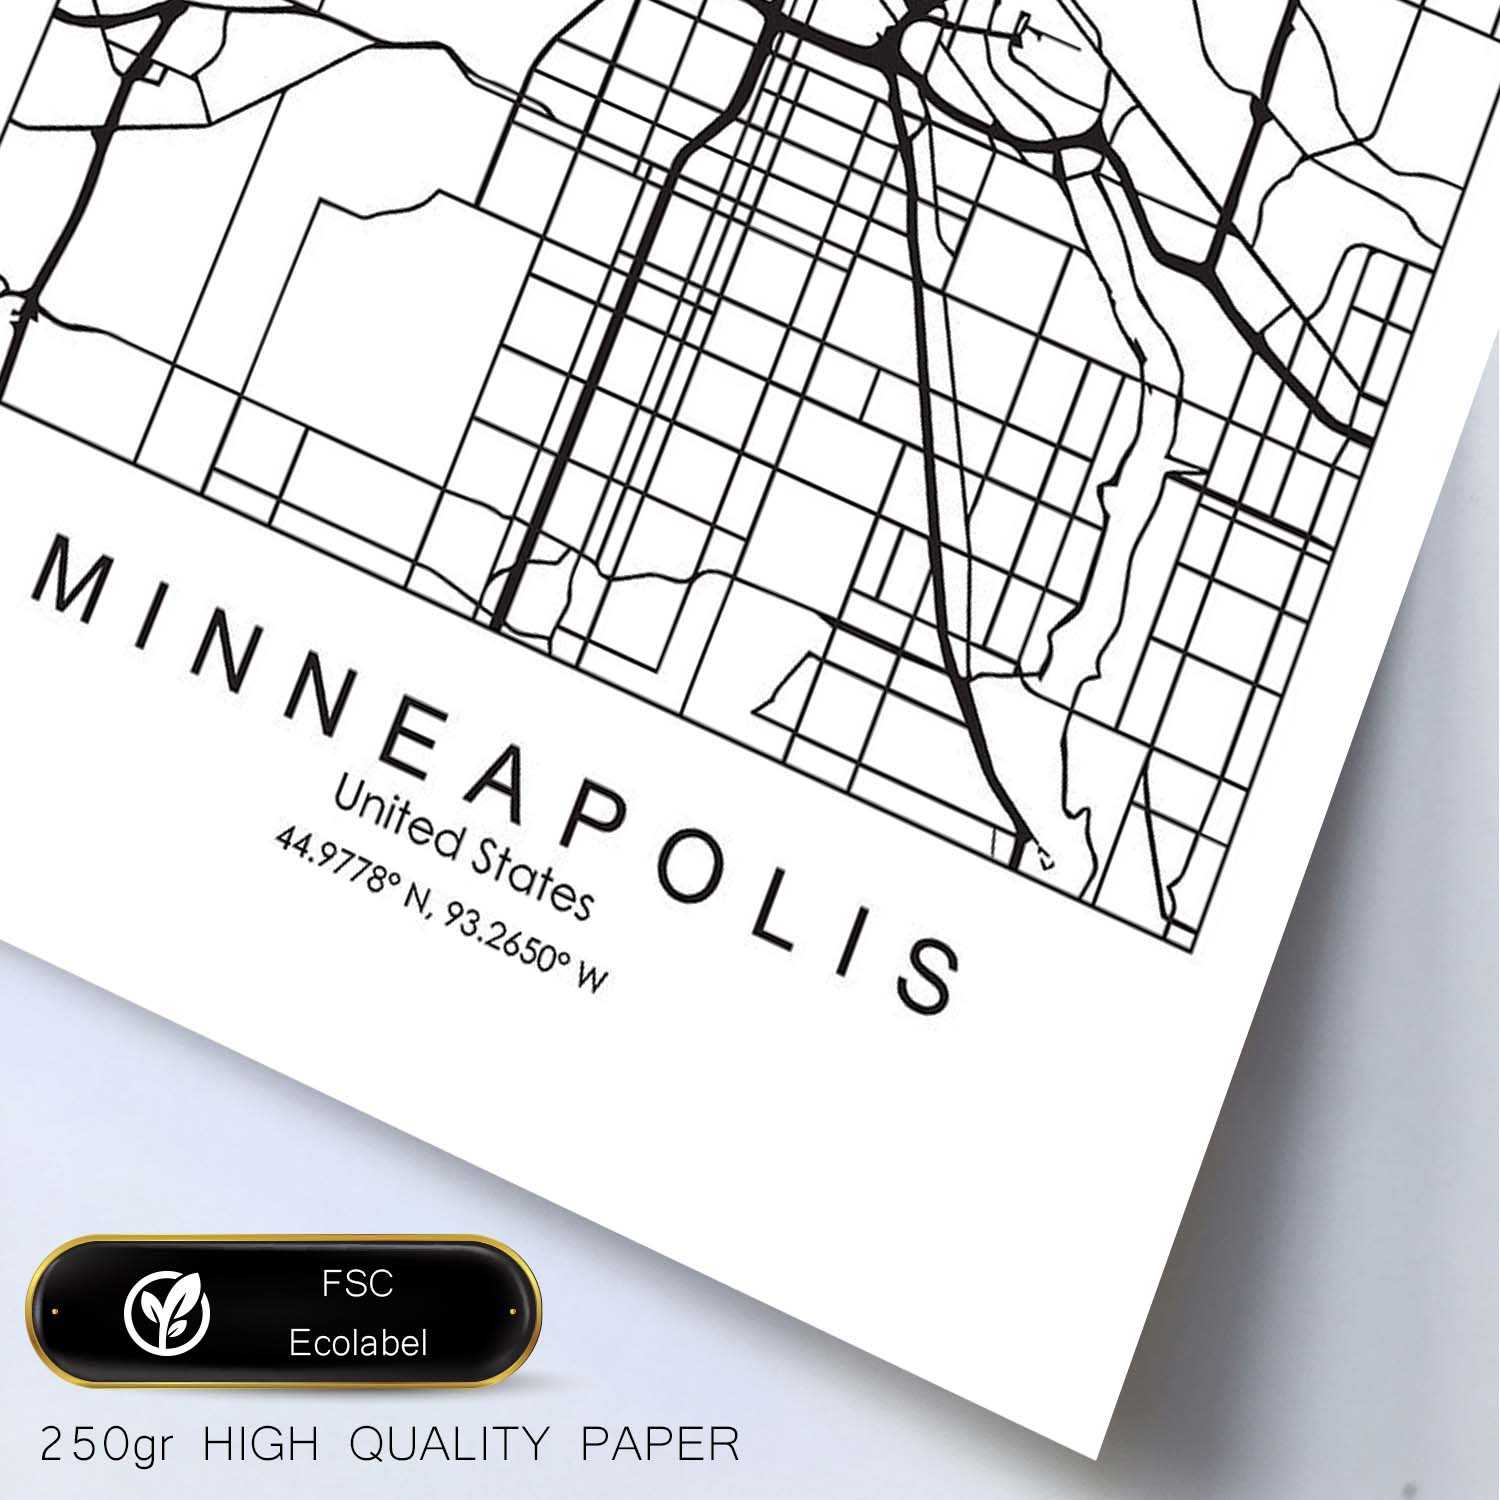 Poster con mapa de Minneapolis. Lámina de Estados Unidos, con imágenes de mapas y carreteras-Artwork-Nacnic-Nacnic Estudio SL